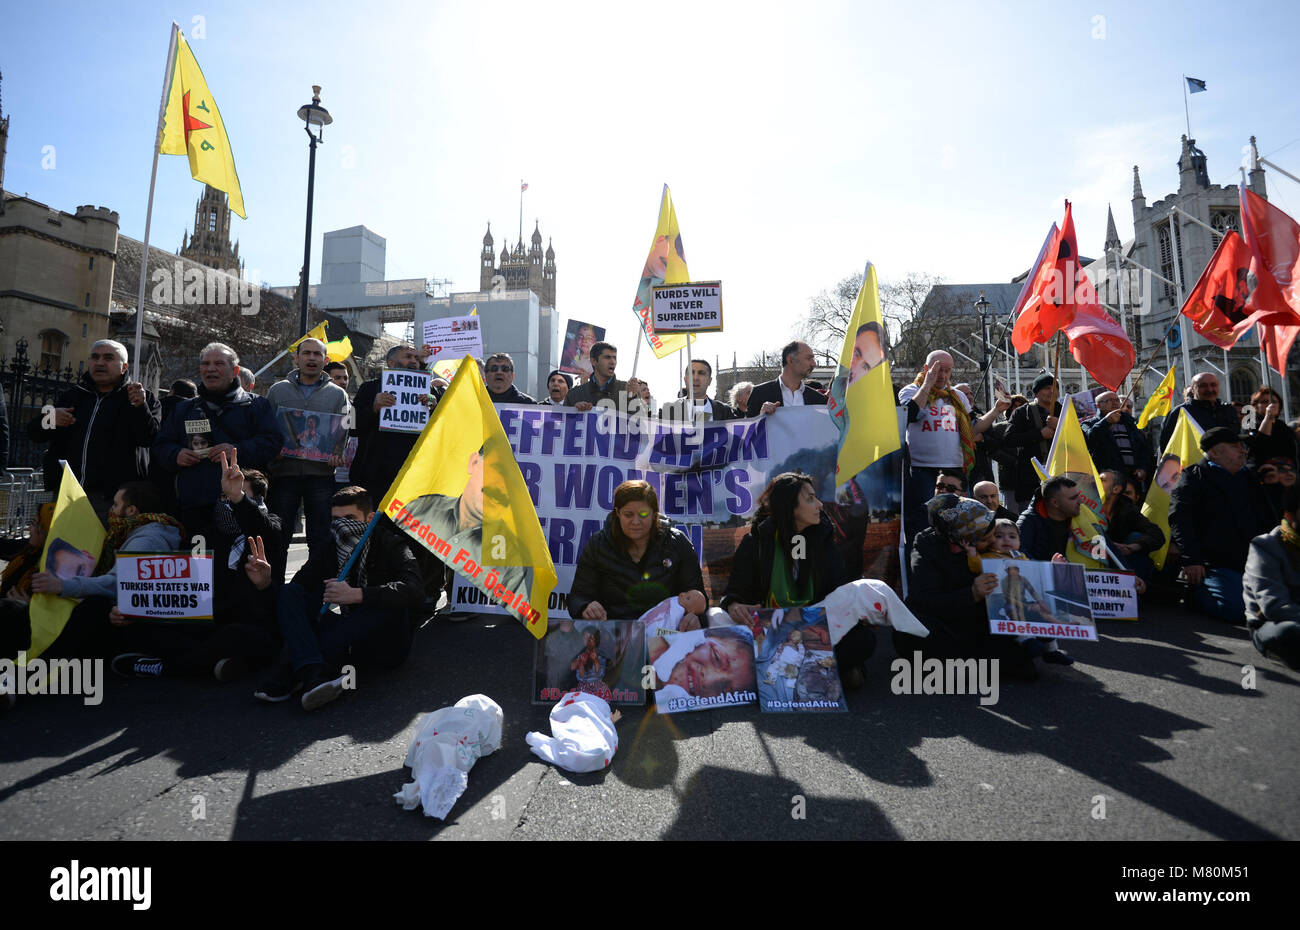 Les manifestants de bloquer la circulation dans la région de Parliament Square, Londres, comme ils protestent contre les attaques sur la ville kurde de l'Afrin en Syrie du nord. Banque D'Images